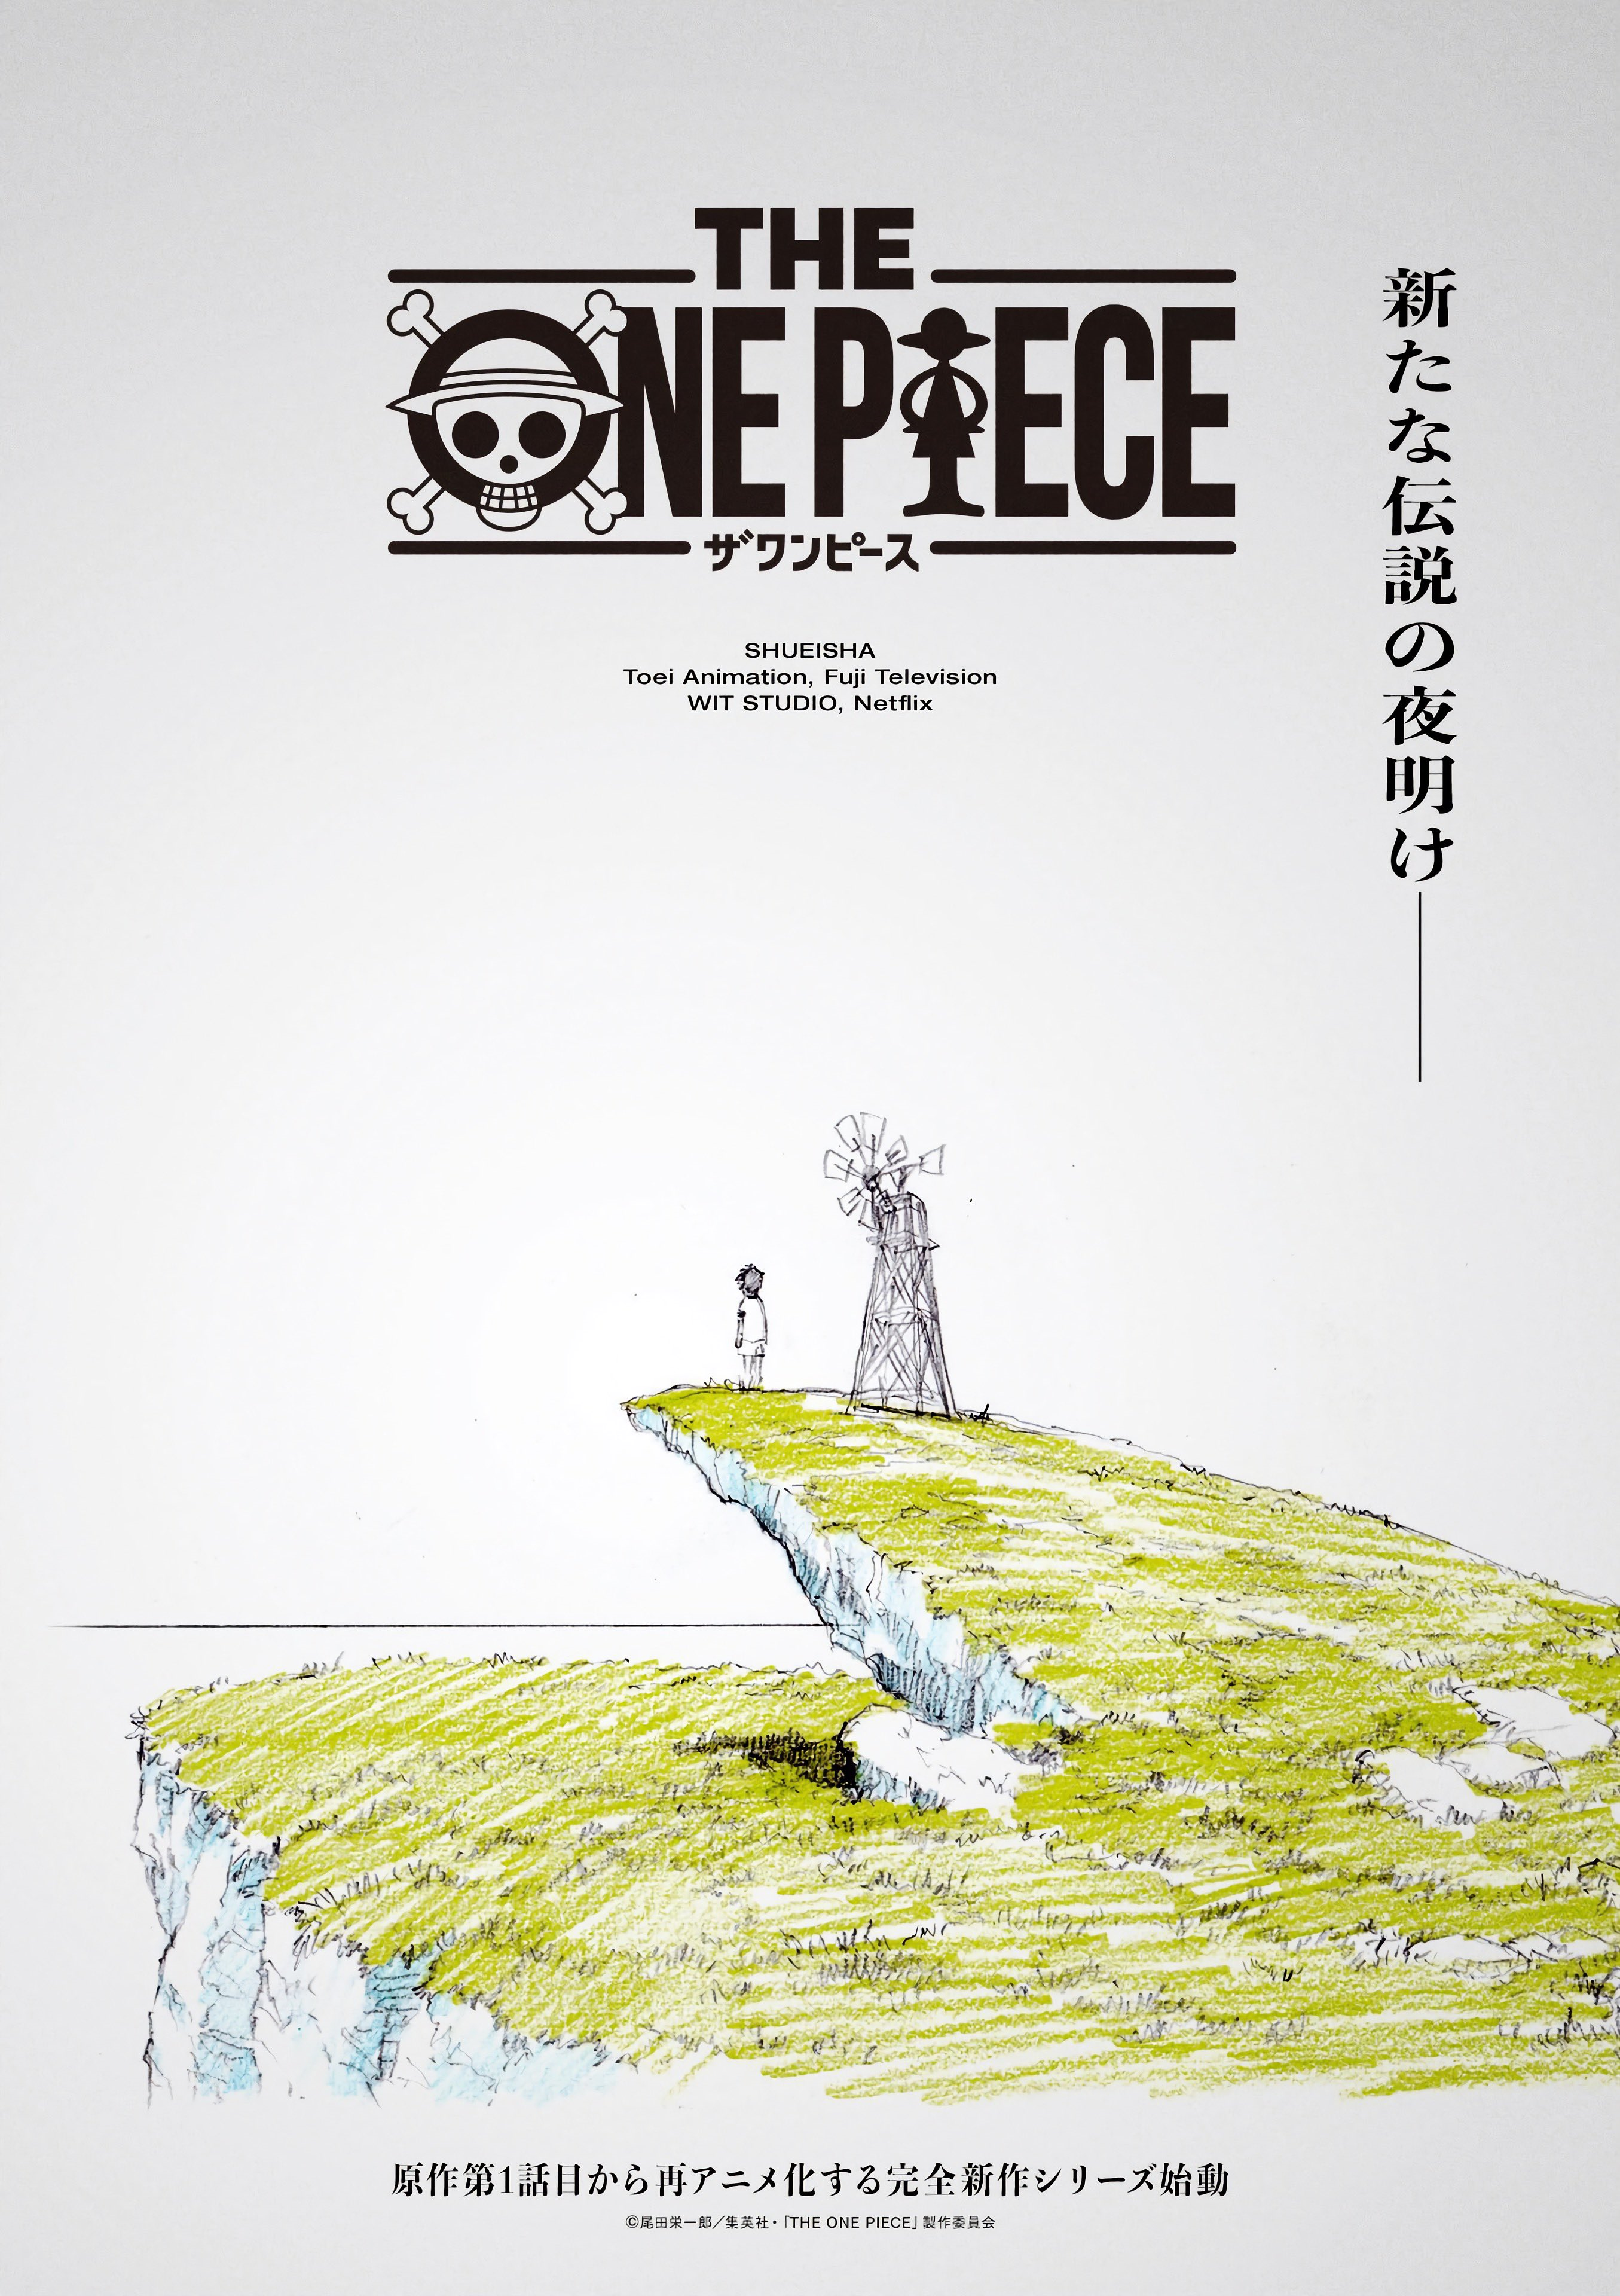 One Piece Databooks, One Piece Wiki